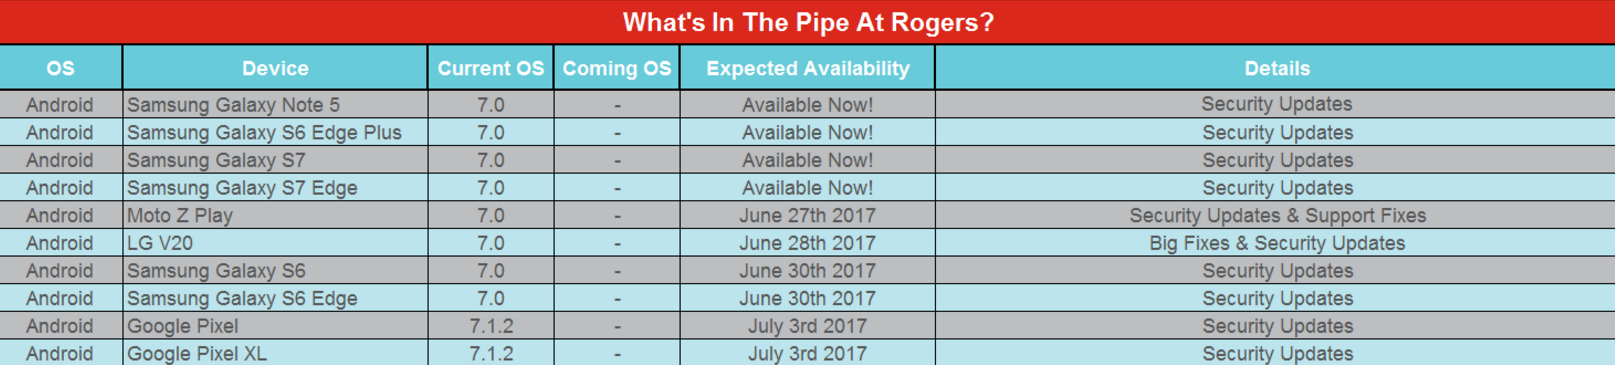 security update schedule rogers